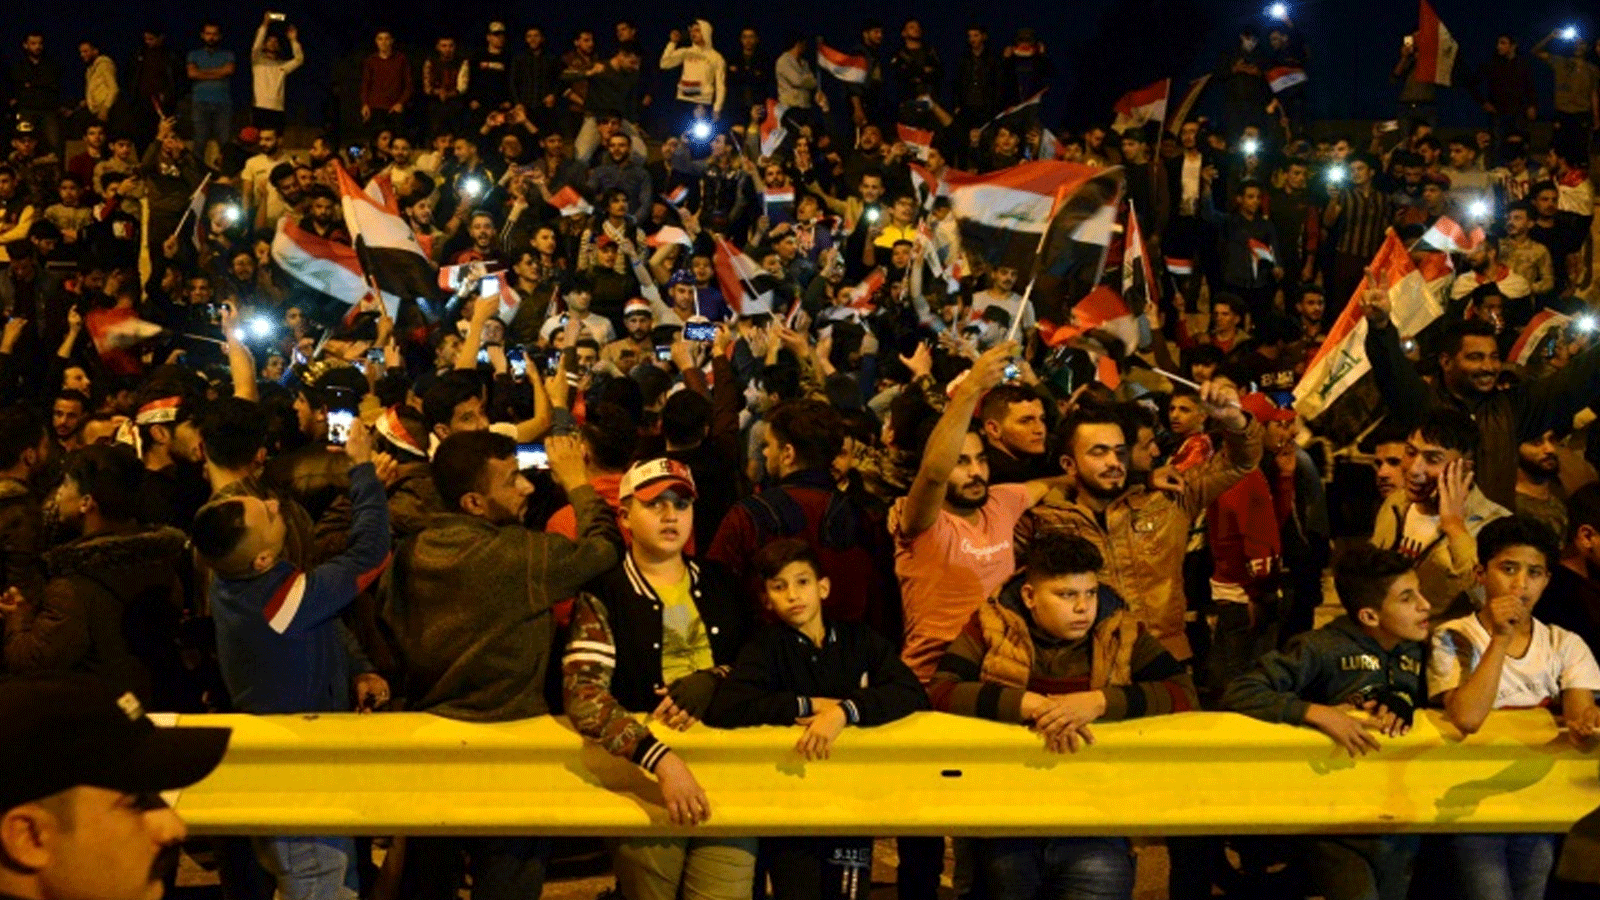 ستحرم الجماهير العراقية من مشاهدة مباراة العراق والامارات في العاصمة بغداد بسبب نقلها إلى السعودية